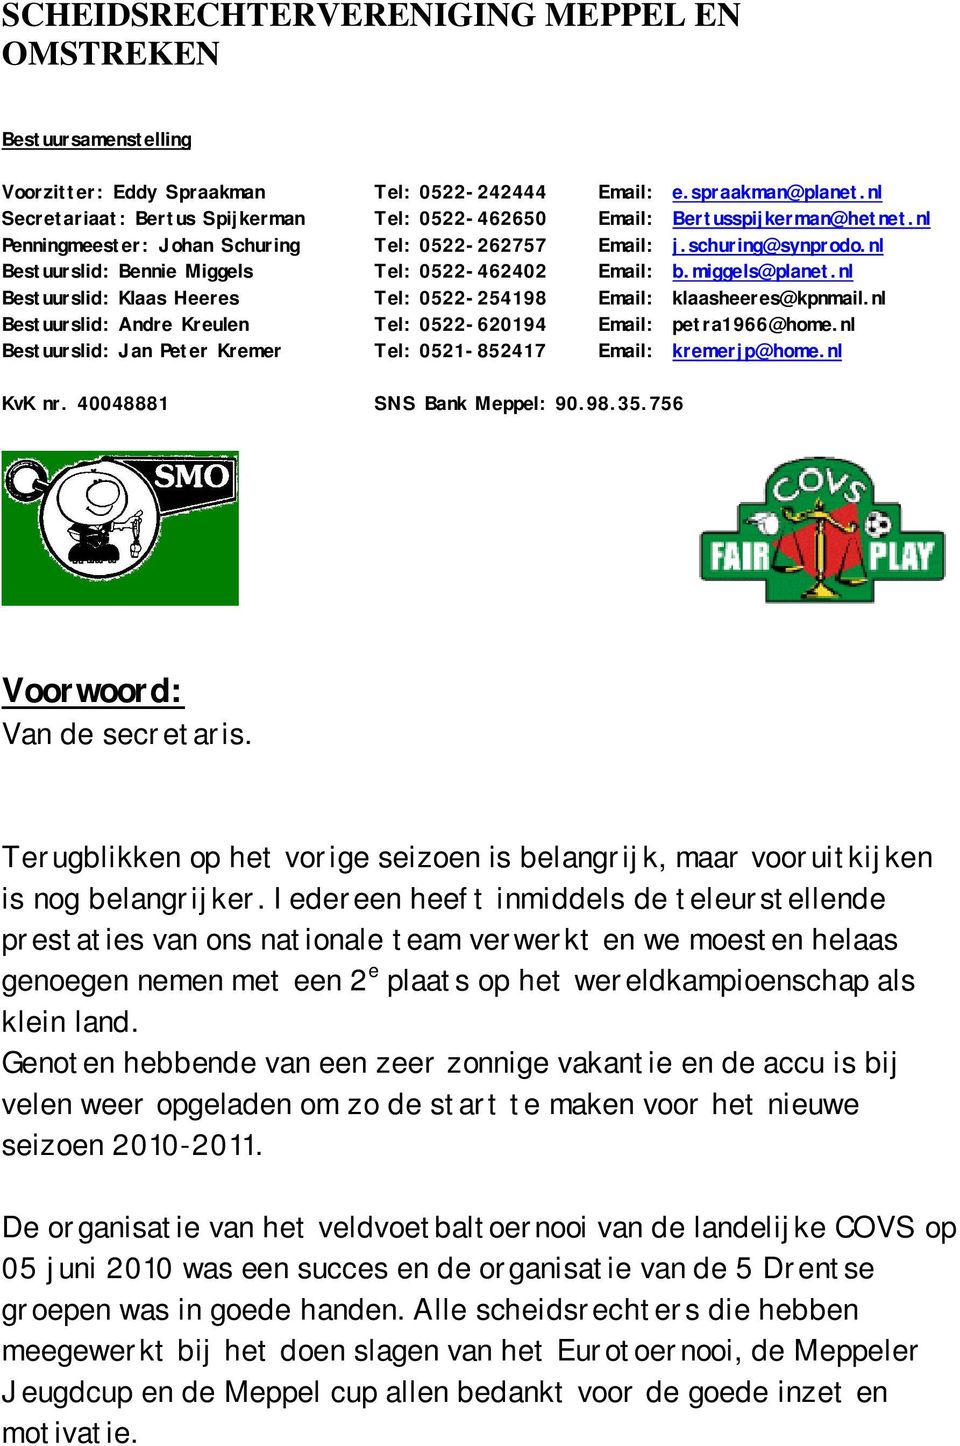 nl Bestuurslid: Bennie Miggels Tel: 0522-462402 Email: b.miggels@planet.nl Bestuurslid: Klaas Heeres Tel: 0522-254198 Email: klaasheeres@kpnmail.